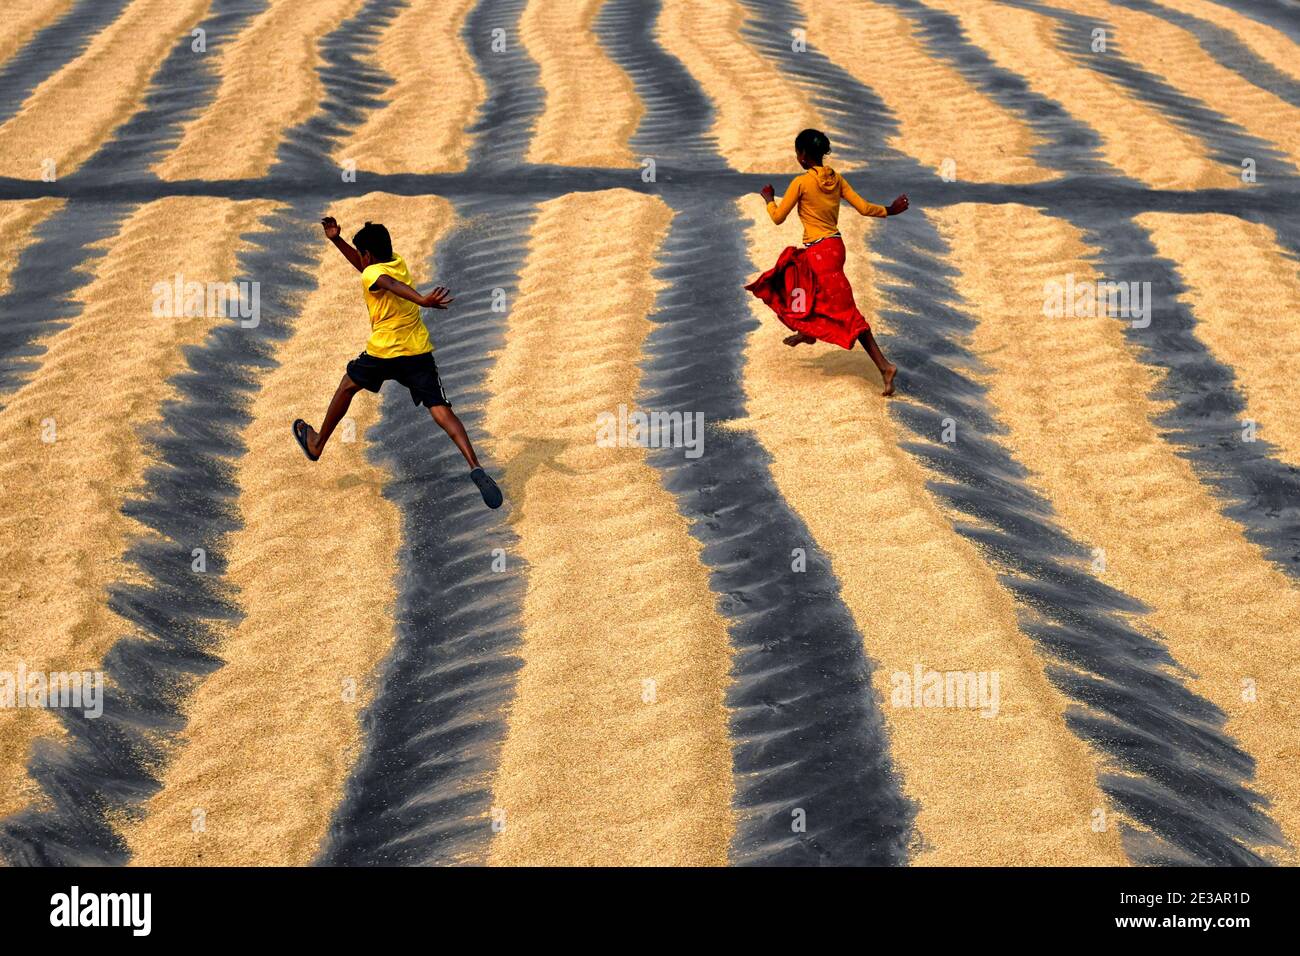 Kinder werden auf einem Reisverarbeitungsfeld beim Spielen gesehen.das Trocknen von Reiskörnern ist einer der wichtigsten Schritte, bevor sie in die Reismühle gebracht werden.durch die Verringerung des Feuchtigkeitsgehalts des Getreides wird das Risiko von Bakterien für die Lagerung auf ein Minimum reduziert. Stockfoto